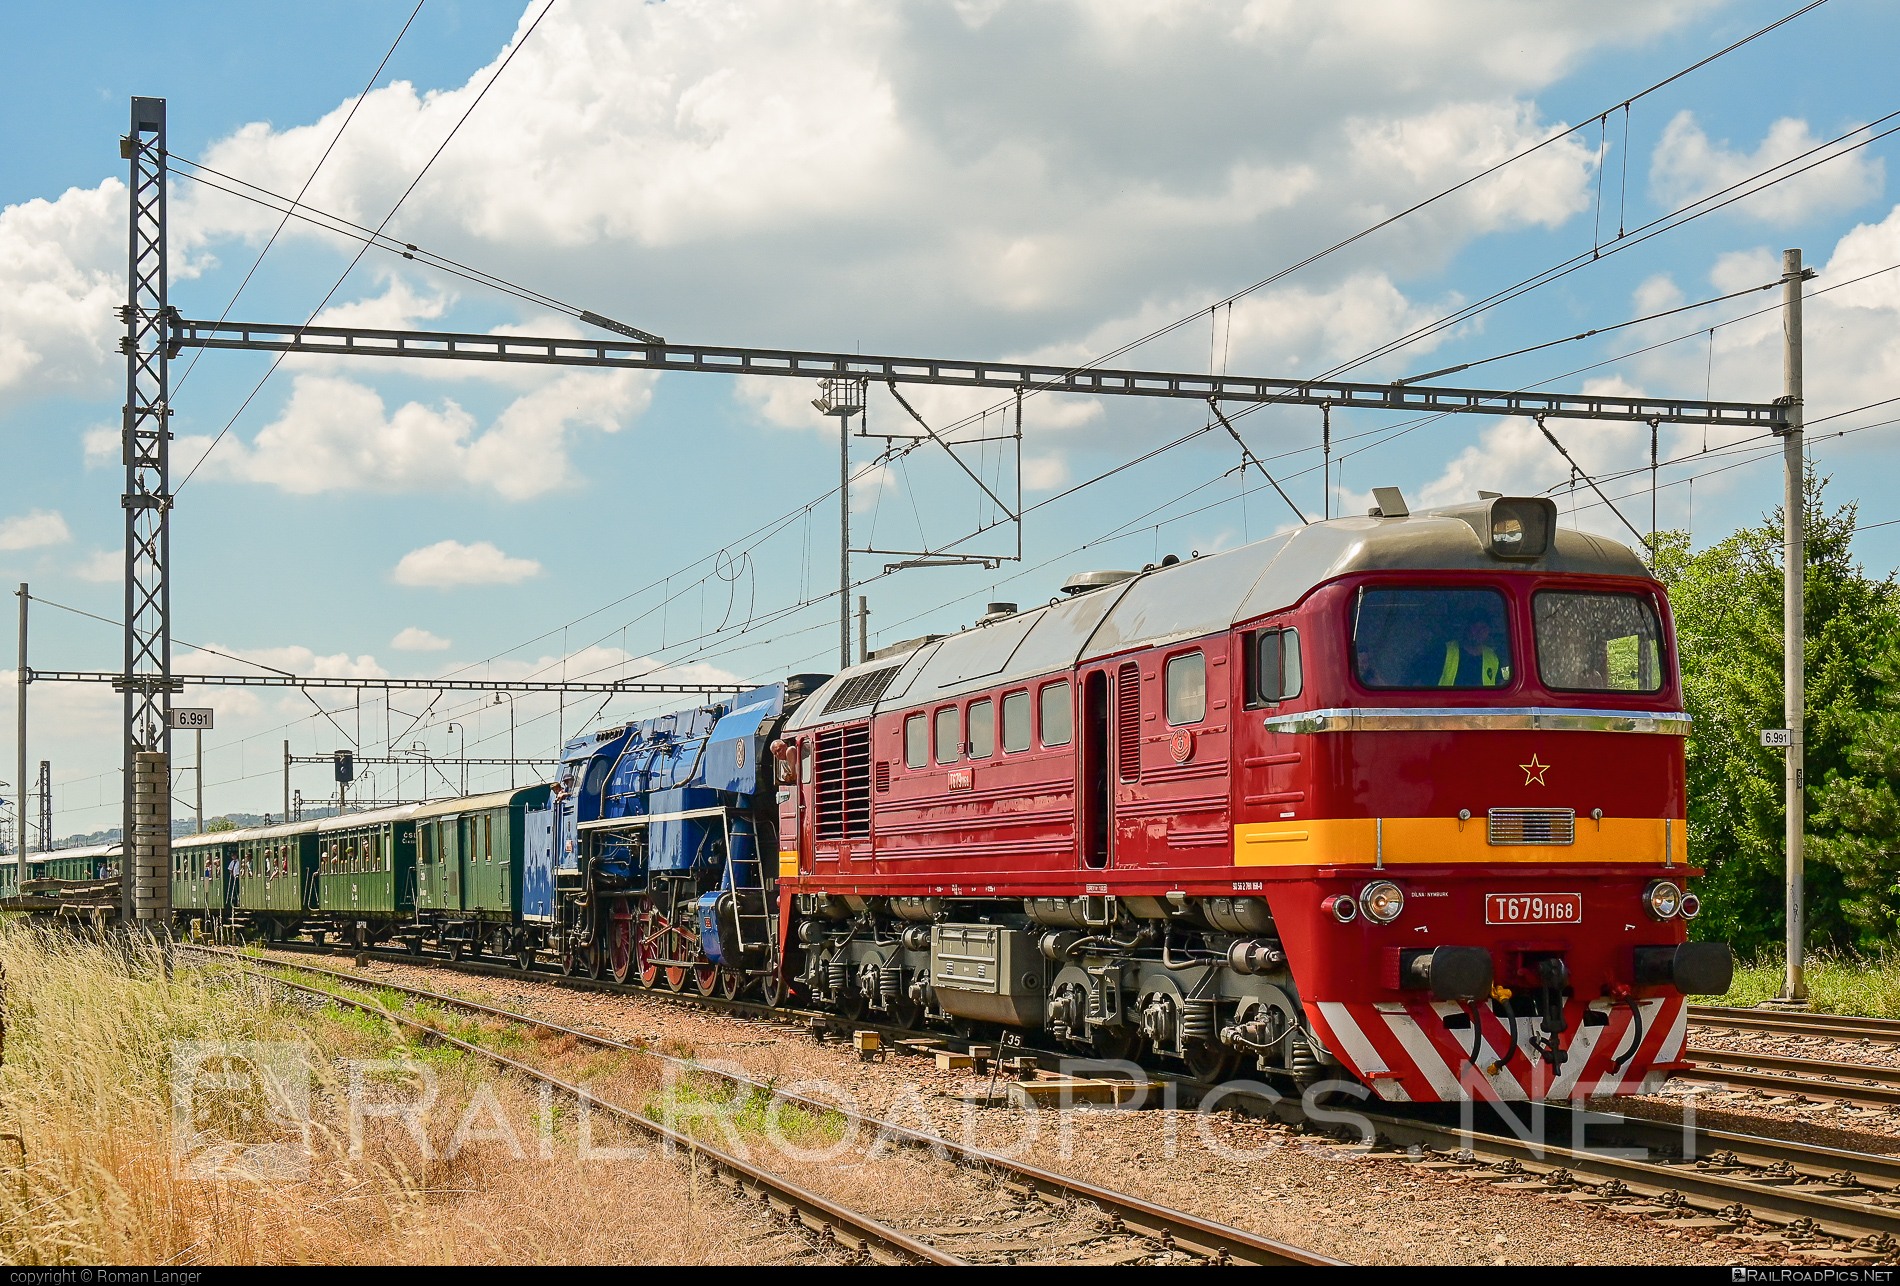 Lugansk M62 - T679.1168 operated by Železnice Slovenskej Republiky #csd #locomotivem62 #ltz #ltzm62 #lugansk #luganskm62 #luganskteplovoz #luhansklocomotiveworks #luhanskteplovoz #m62 #m62locomotive #sergei #zelezniceslovenskejrepubliky #zsr